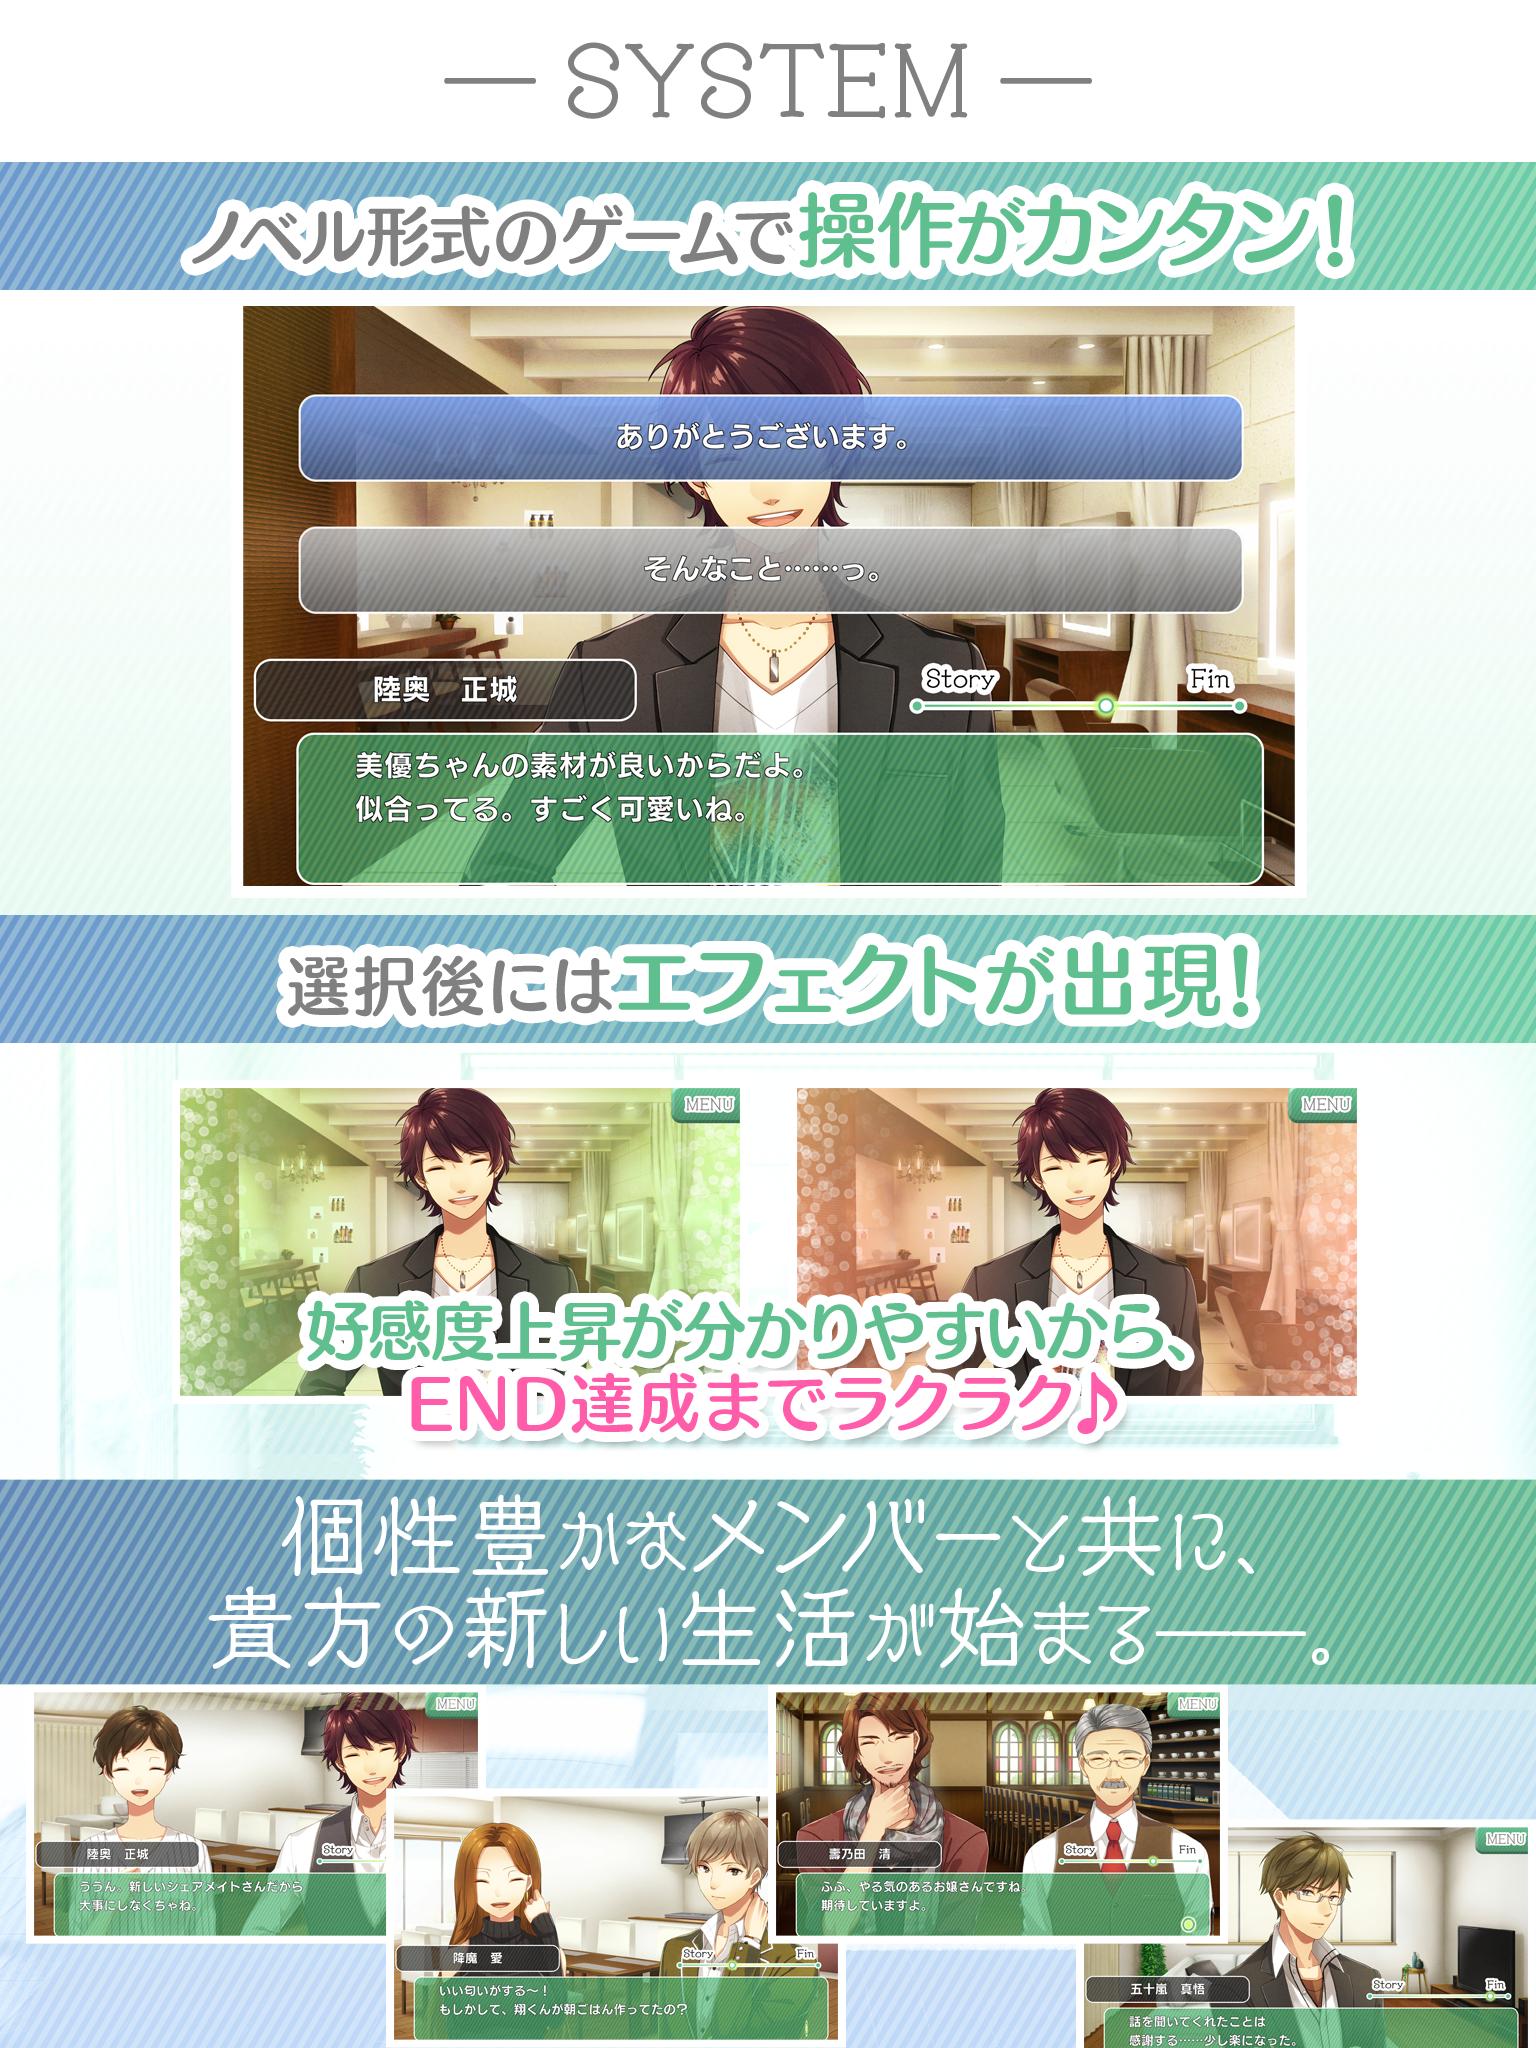 恋せよ乙女 シェアハウス物語 For Android Apk Download